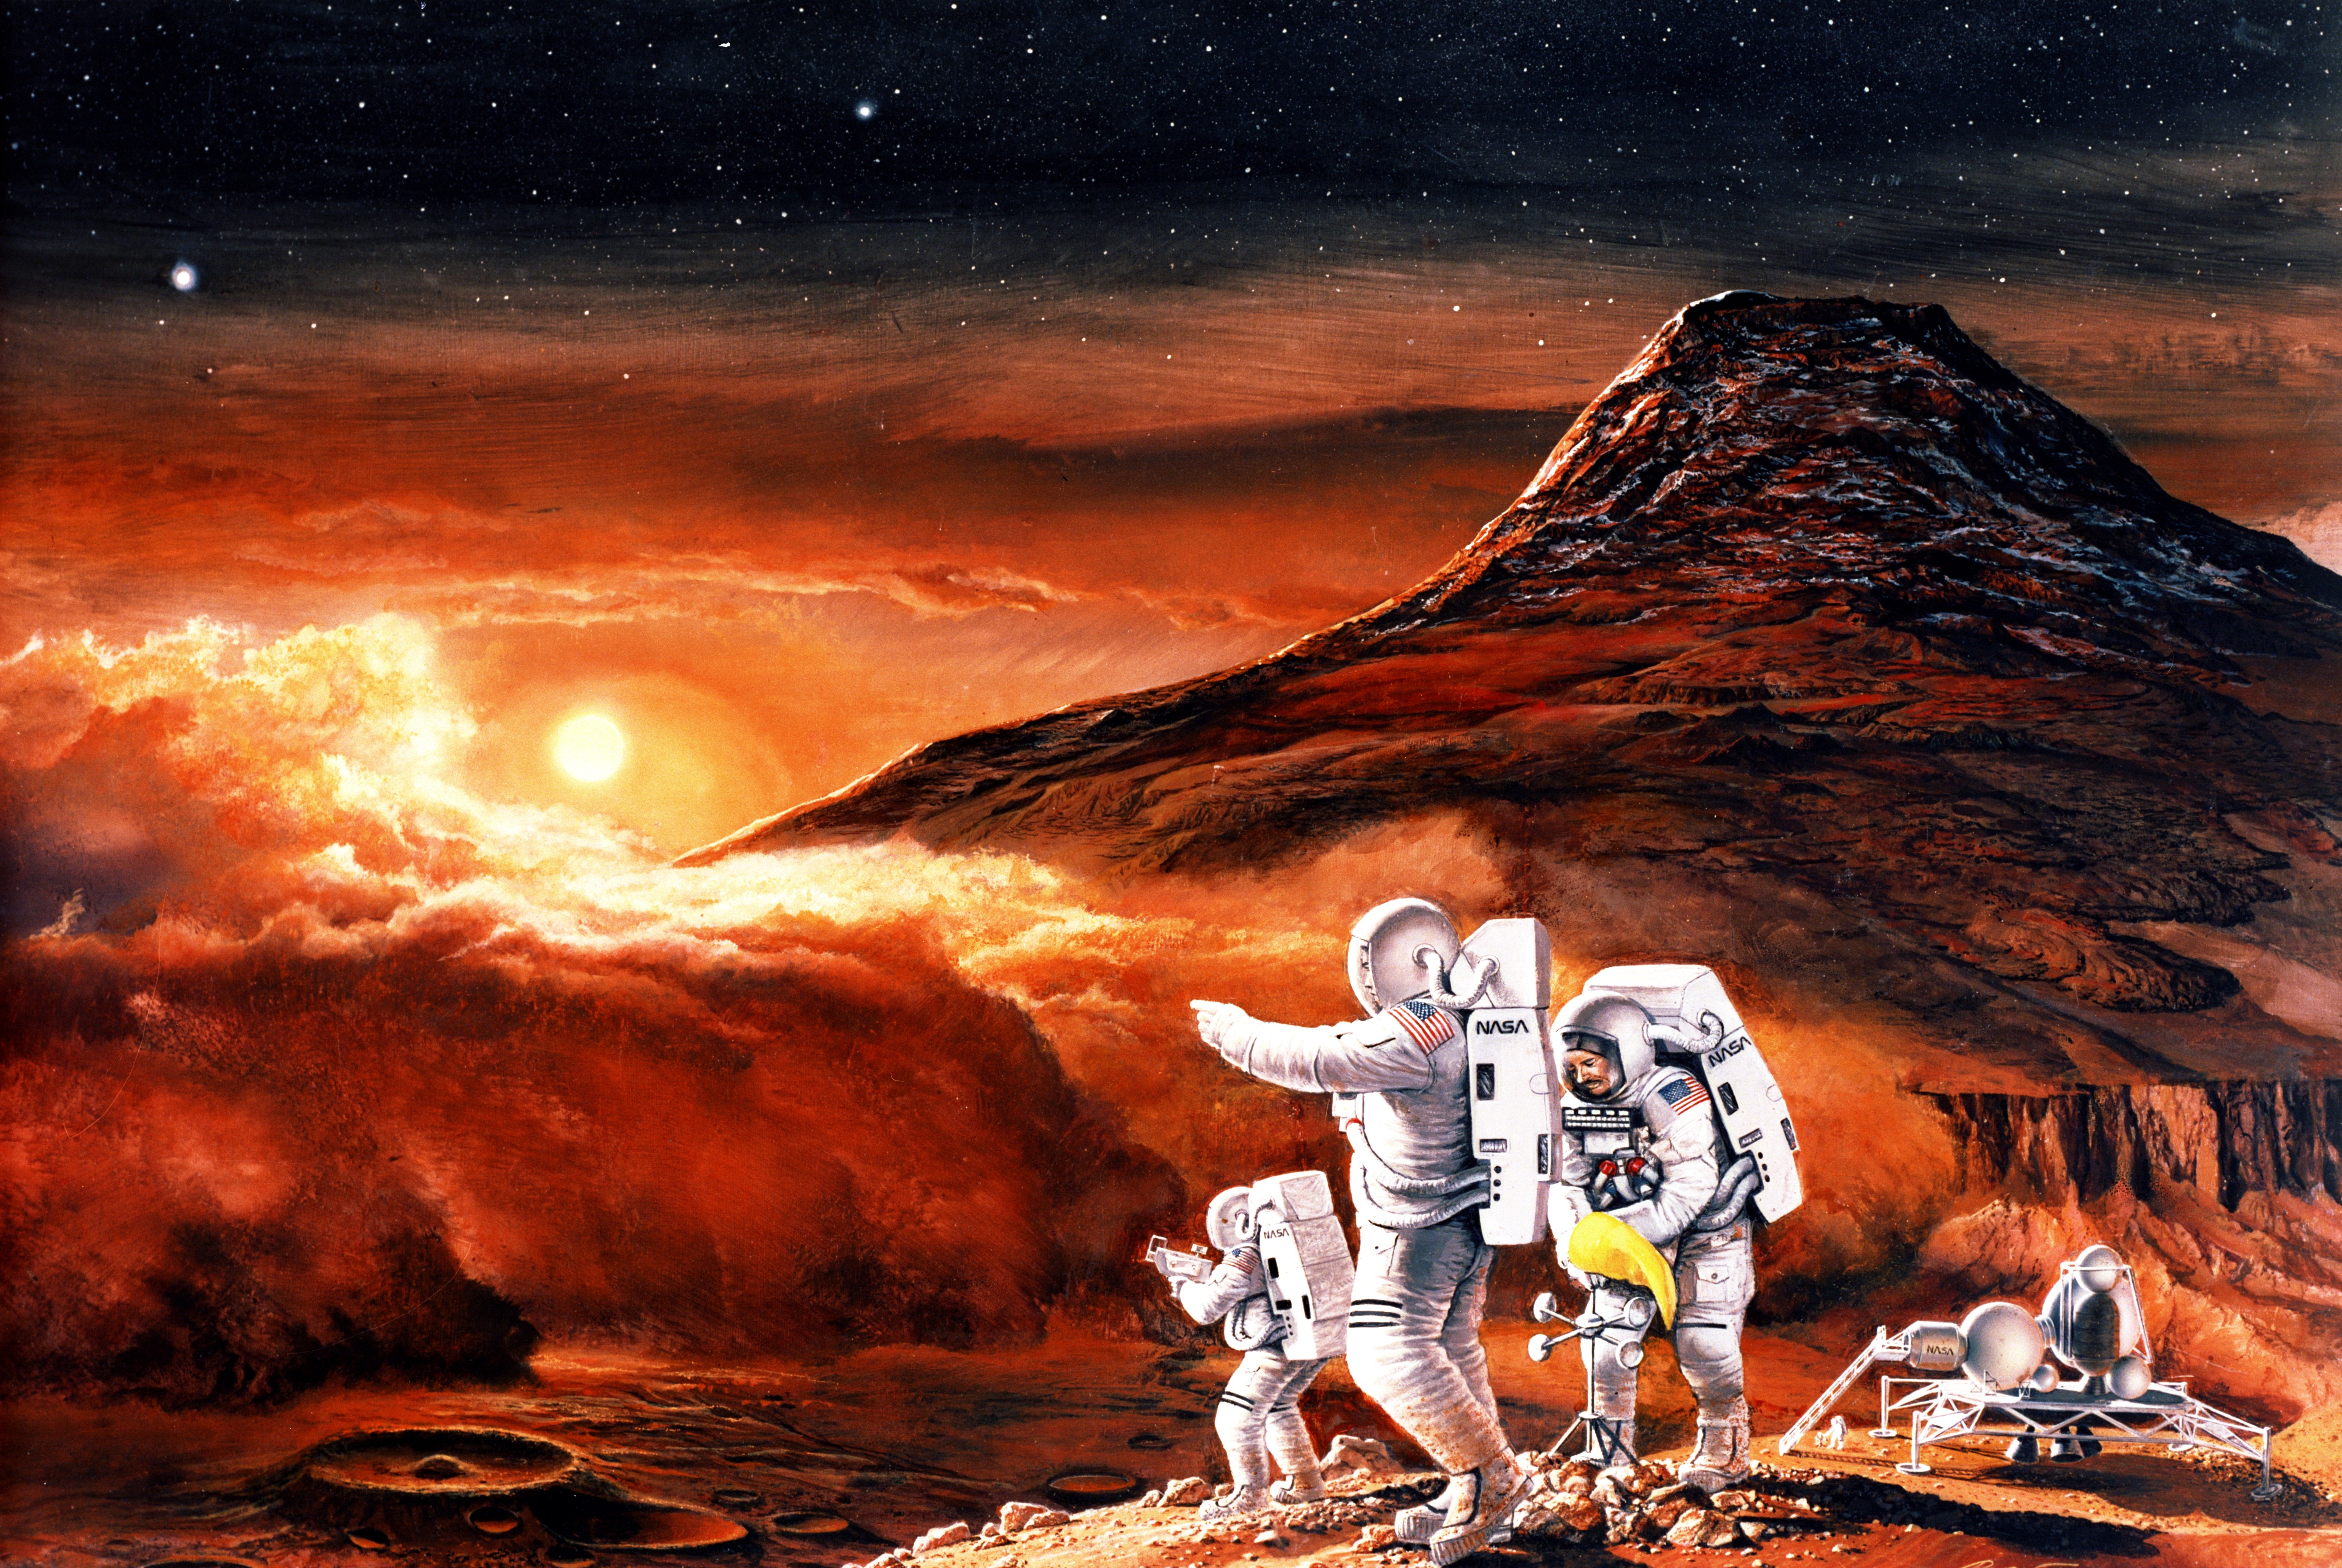  En 2030, la NASA podría enviar humanos a Marte